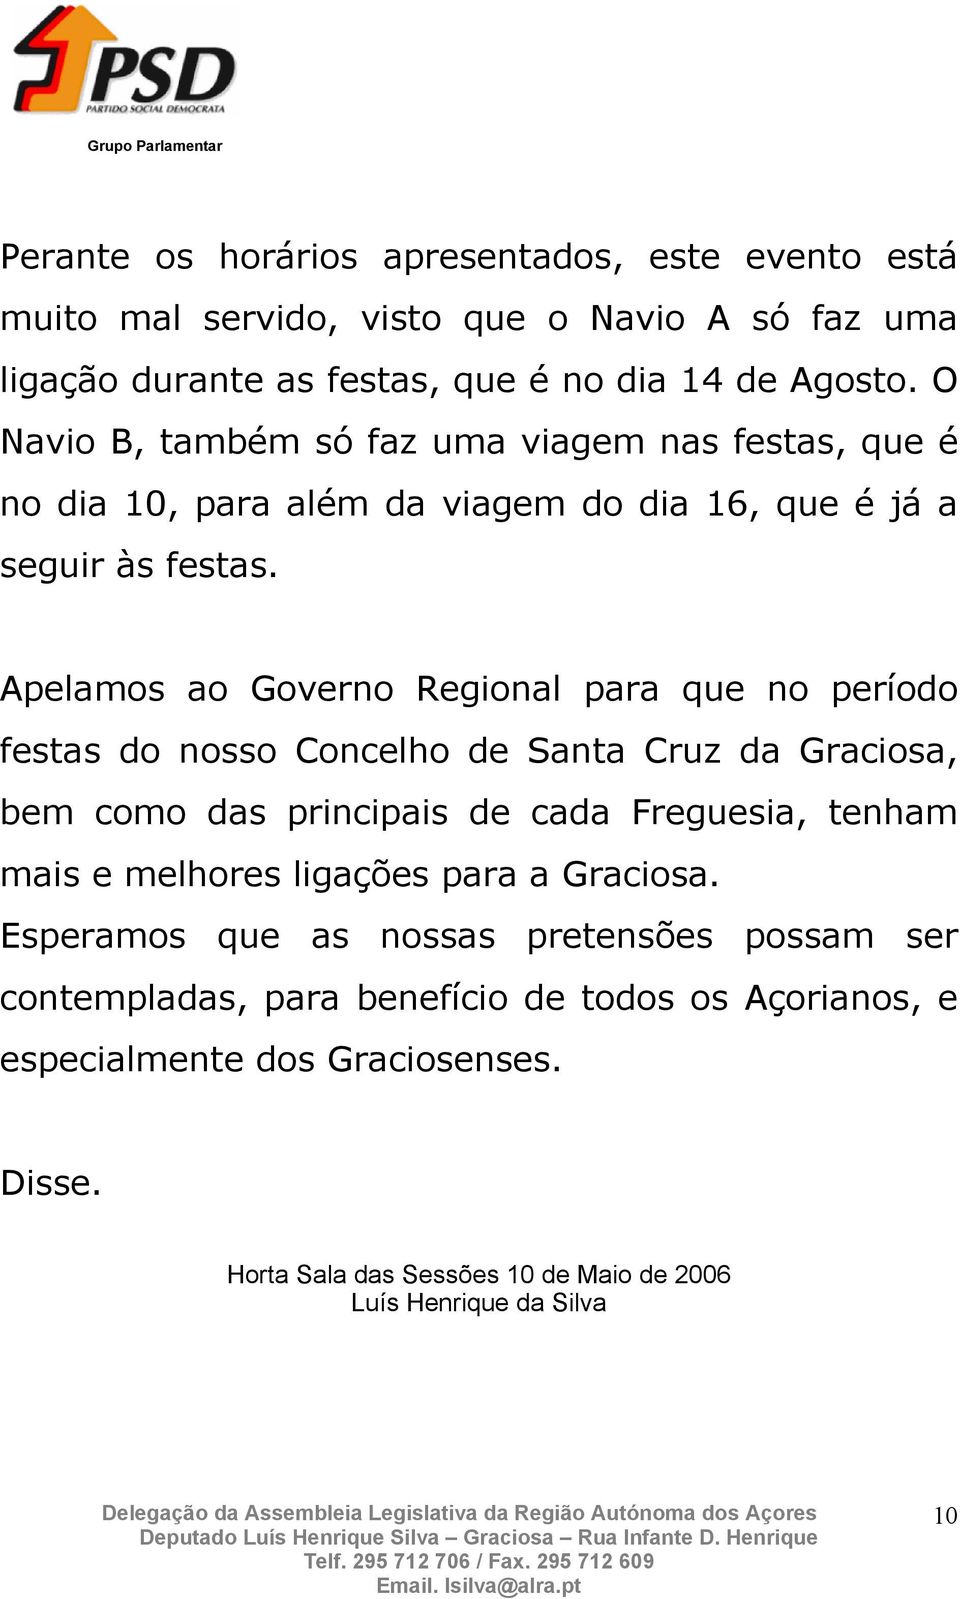 Apelamos ao Governo Regional para que no período festas do nosso Concelho de Santa Cruz da Graciosa, bem como das principais de cada Freguesia, tenham mais e melhores